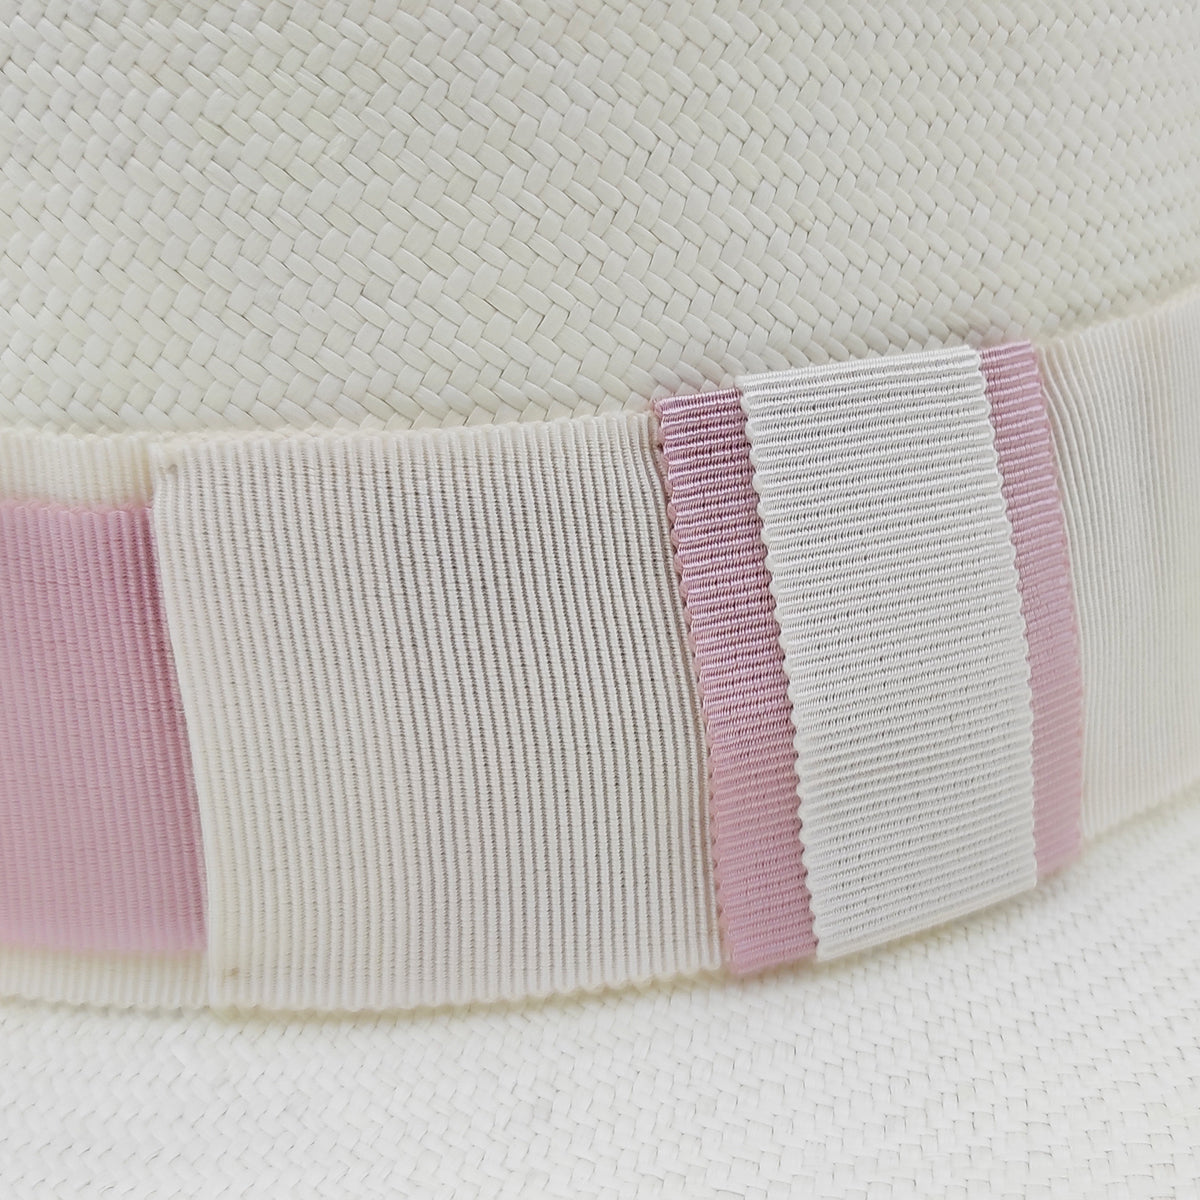 player grand borde for woman 100% Capri elegant pink hat detail